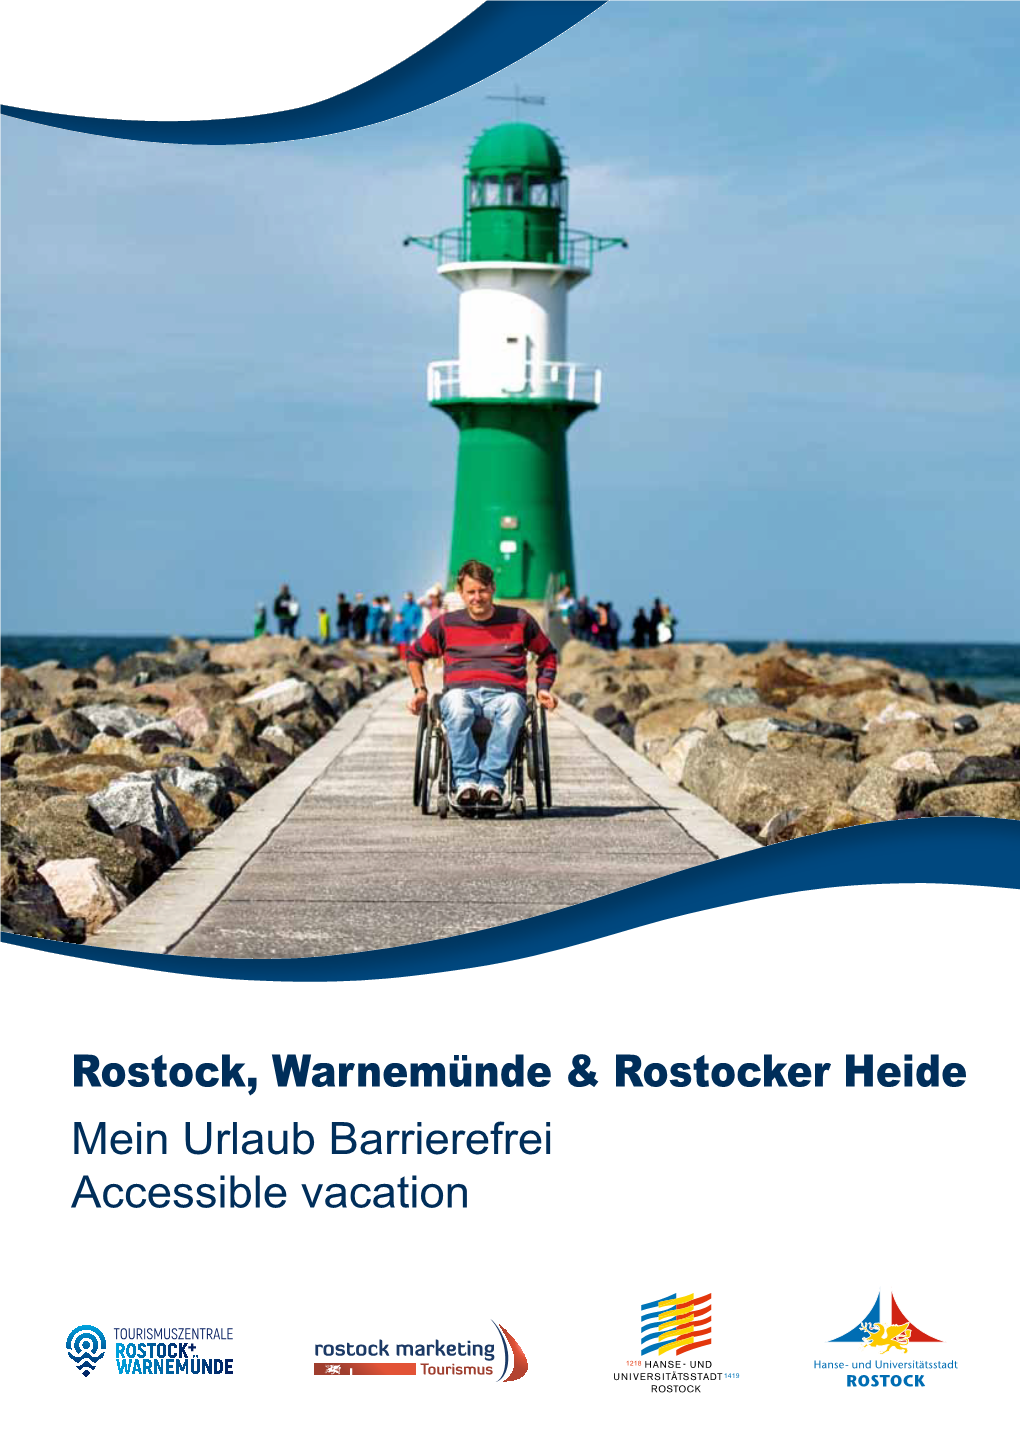 Rostock, Warnemünde & Rostocker Heide Mein Urlaub Barrierefrei